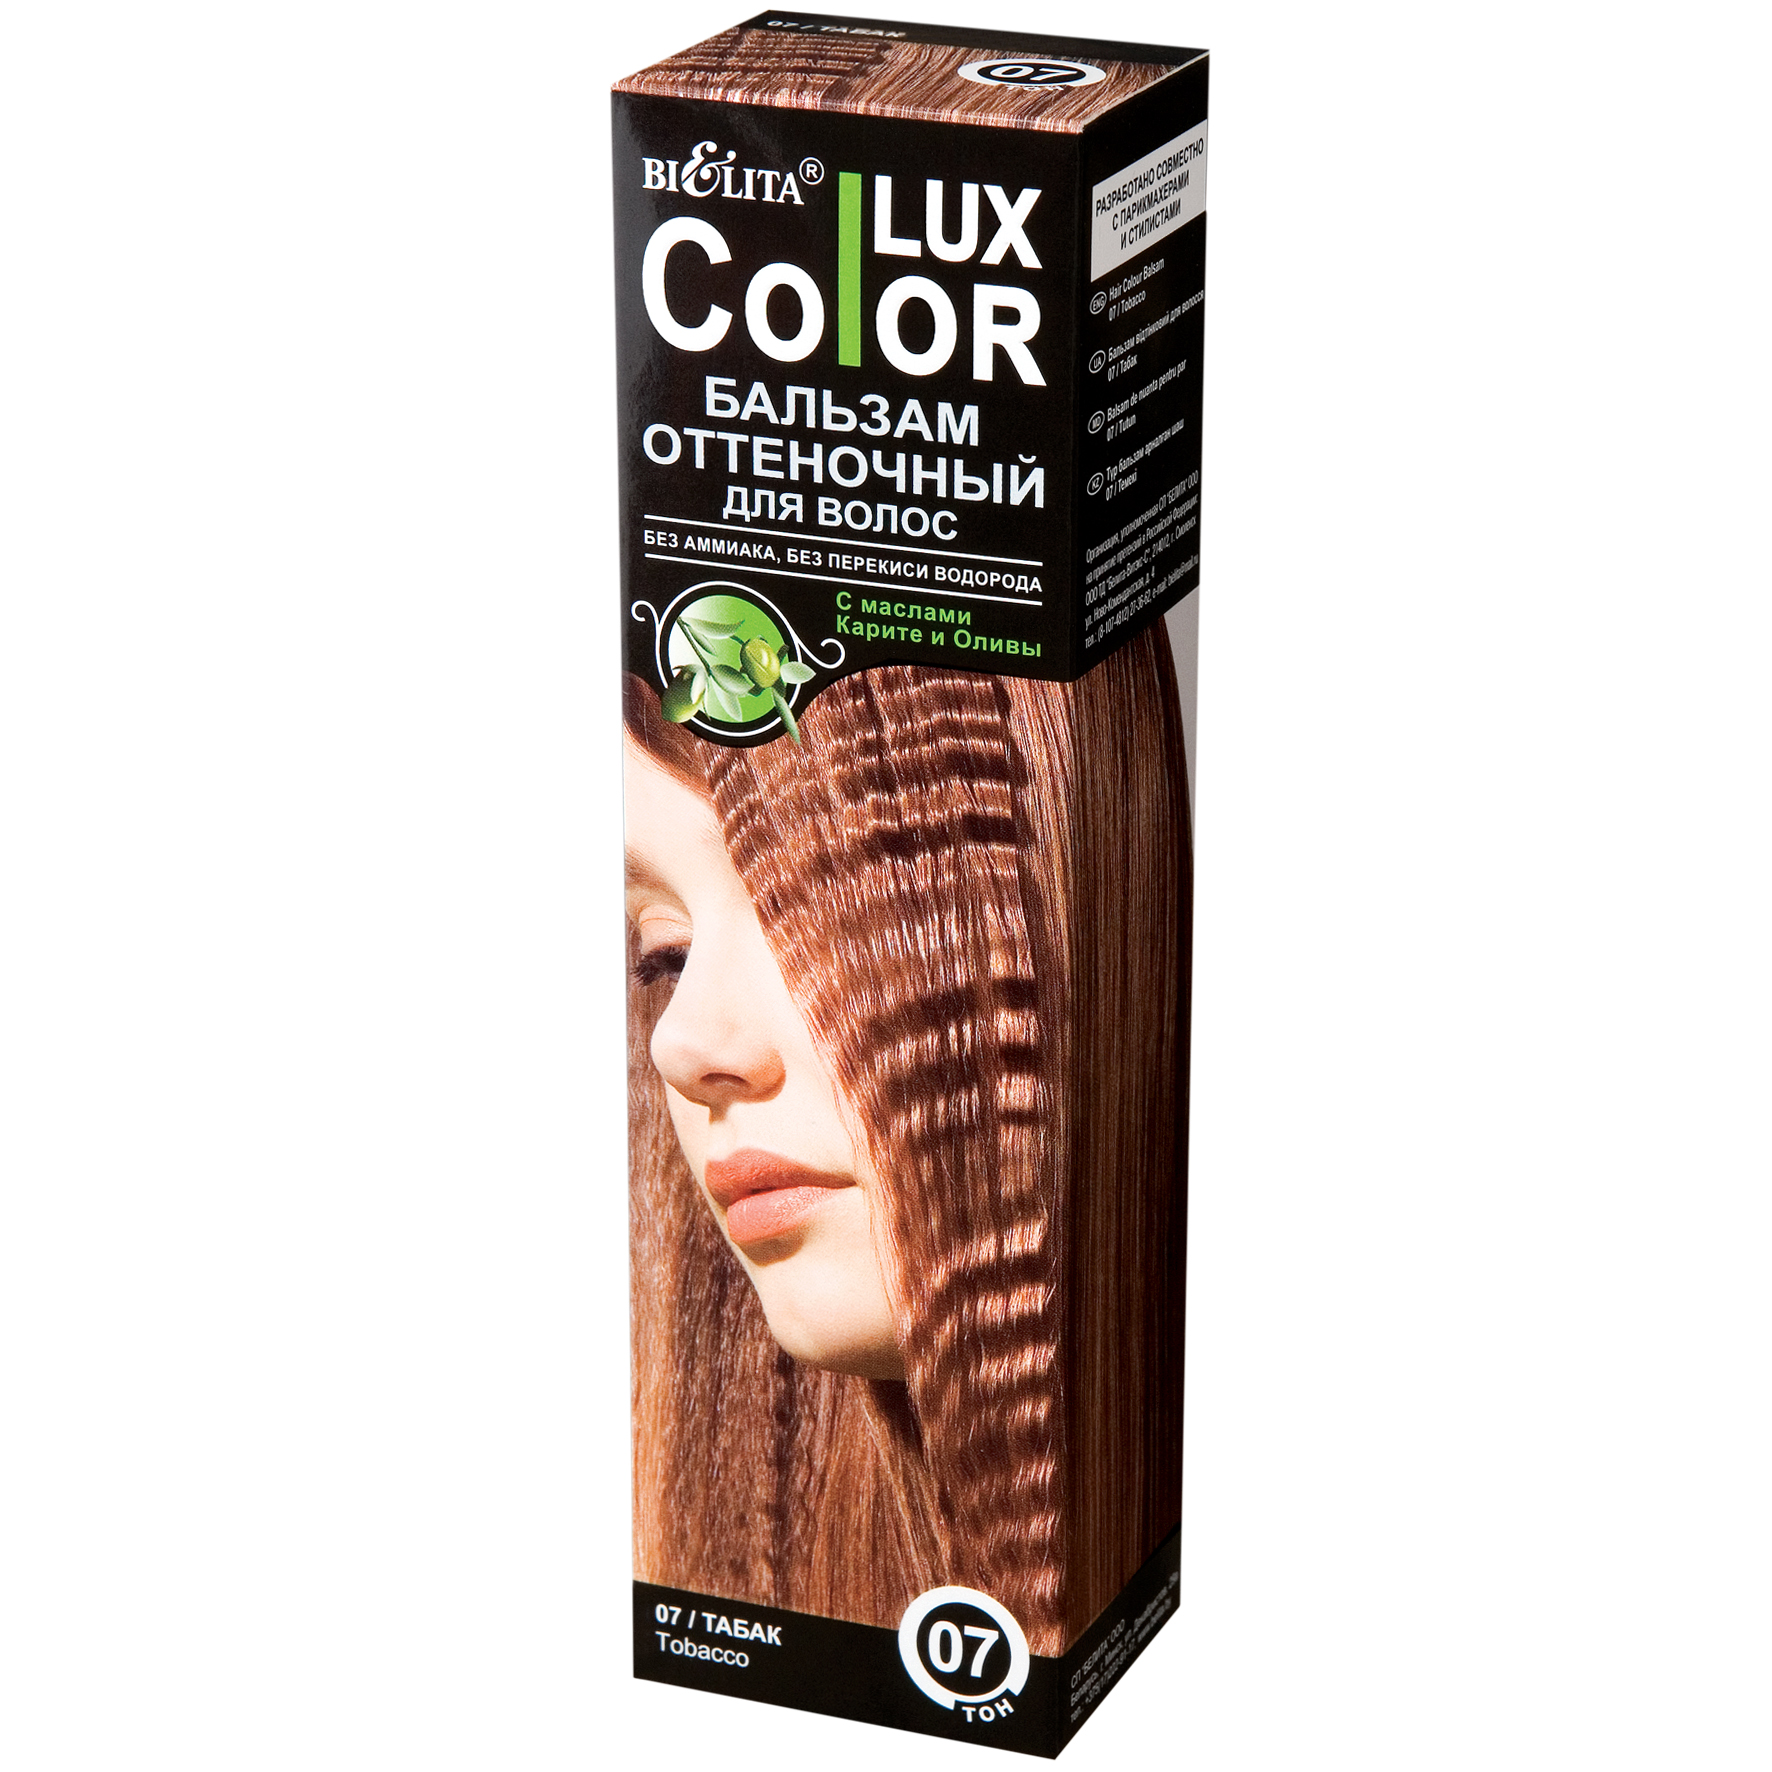 Оттеночный бальзам люкс. Оттеночный бальзам для волос "Color Lux" тон: 07, табак. Бальзам Белита Color Lux палитра. Красящий волосы бальзам Белита Color Lux. Lux Color оттеночный бальзам 01.1.